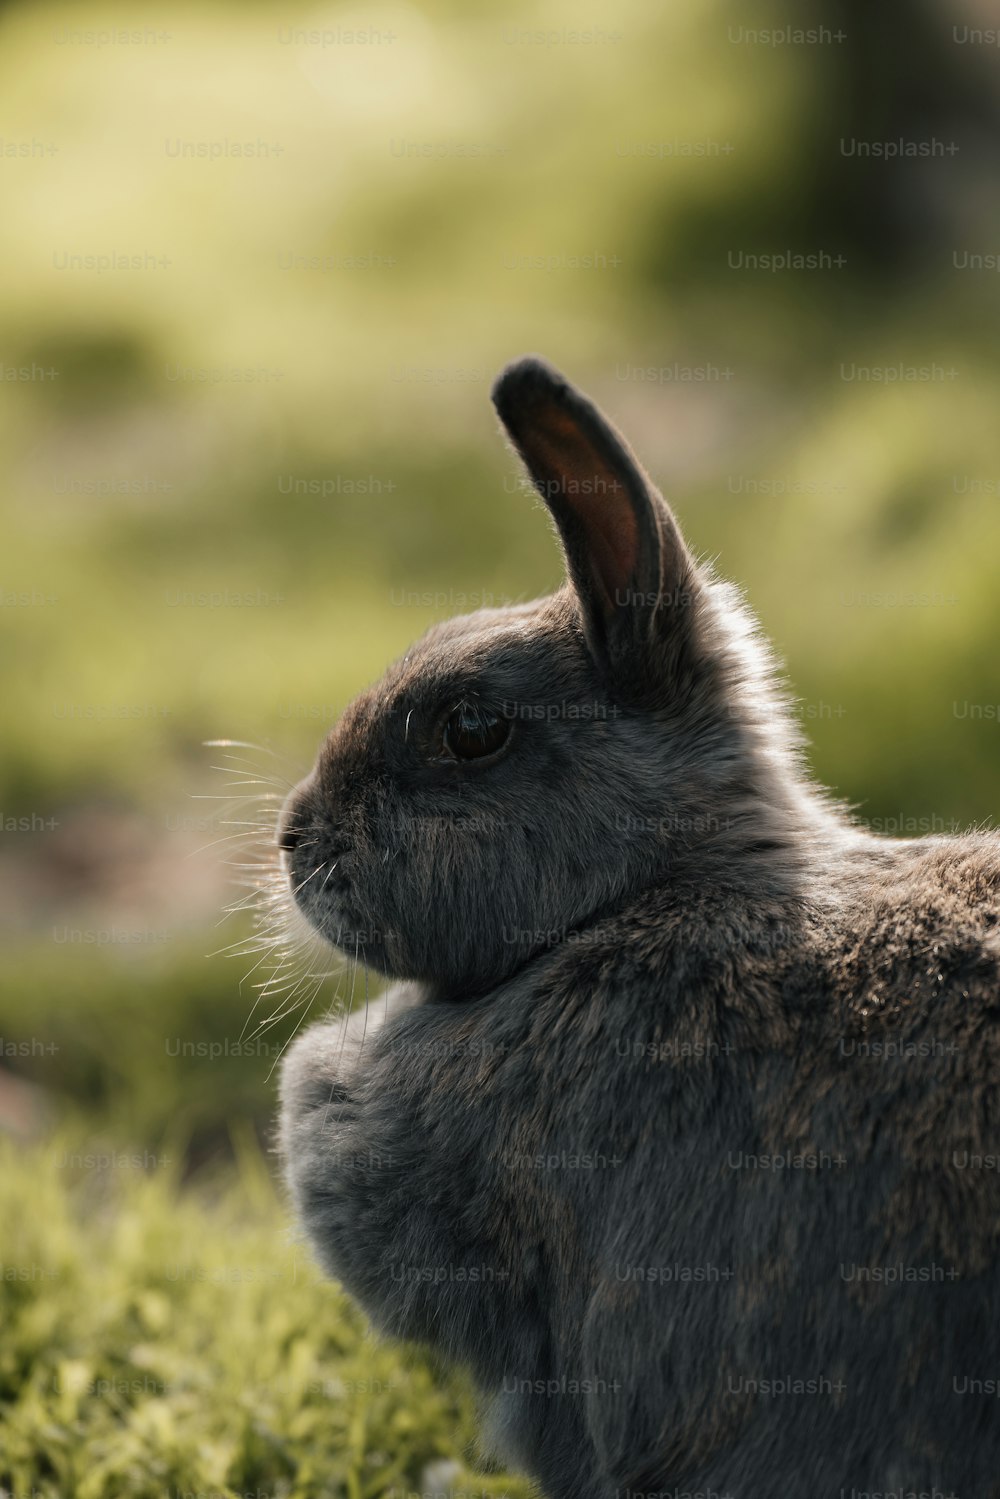 작은 토끼가 풀밭에 앉아 있다